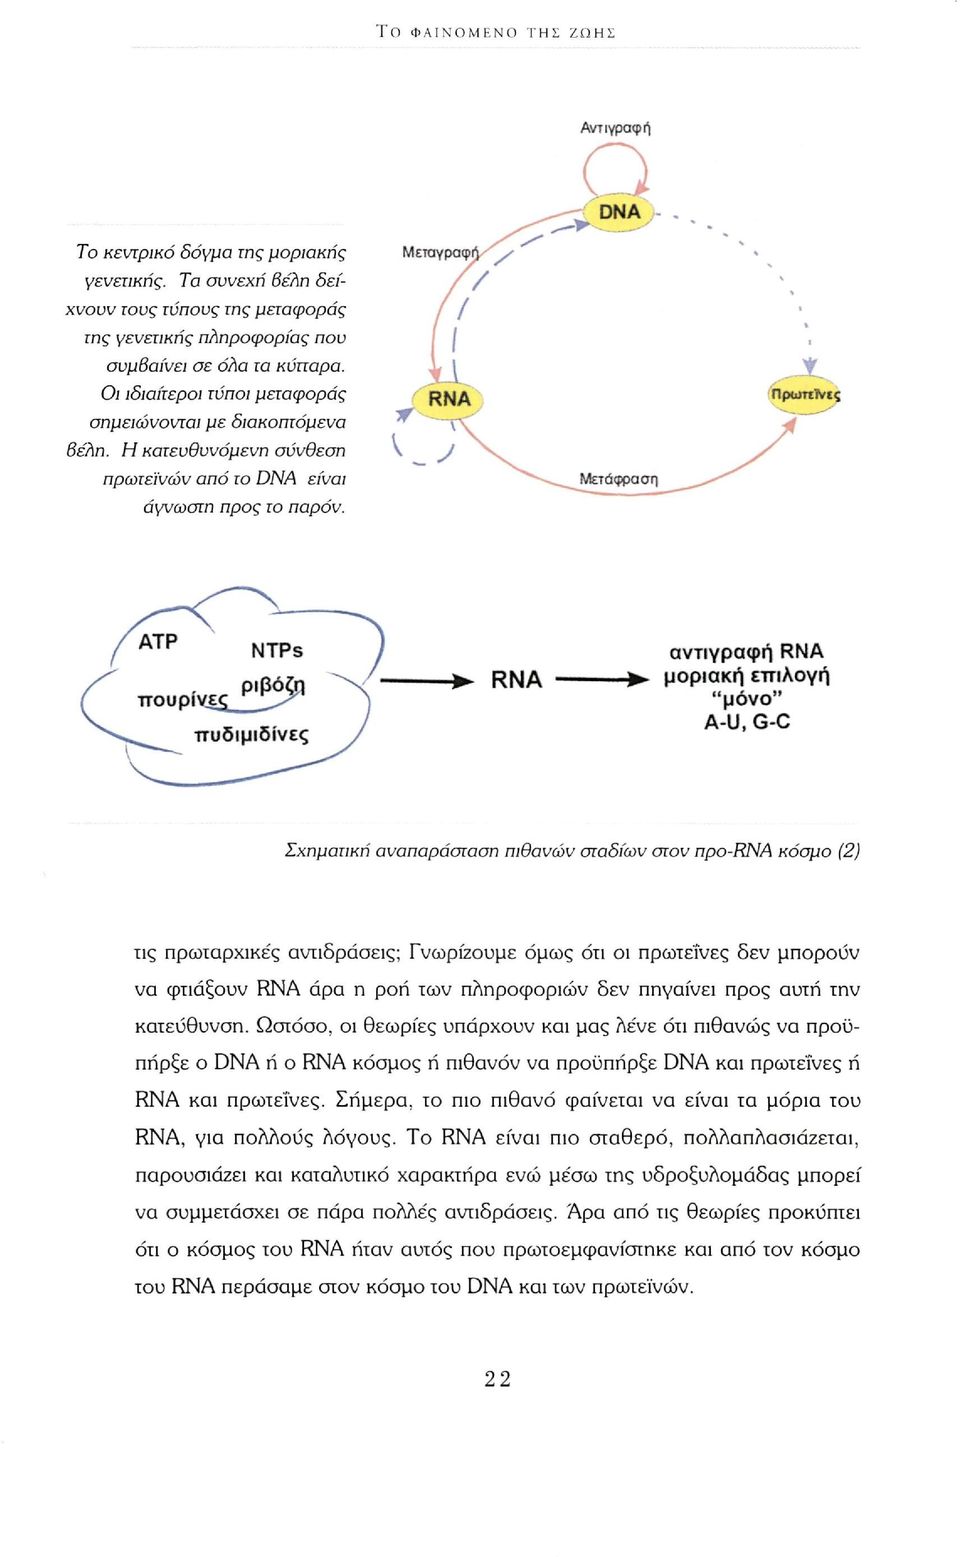 RNA αντιγραφή RNA -> μοριακή επιλογή "μόνο" A-U, G-C Σχηματική αναπαράσταση πιθανών σταδίων στον npo-rna κόσμο (2) τις πρωταρχικές αντιδράσεις; Γνωρίζουμε όμως ότι οι πρωτεΐνες δεν μπορούν να